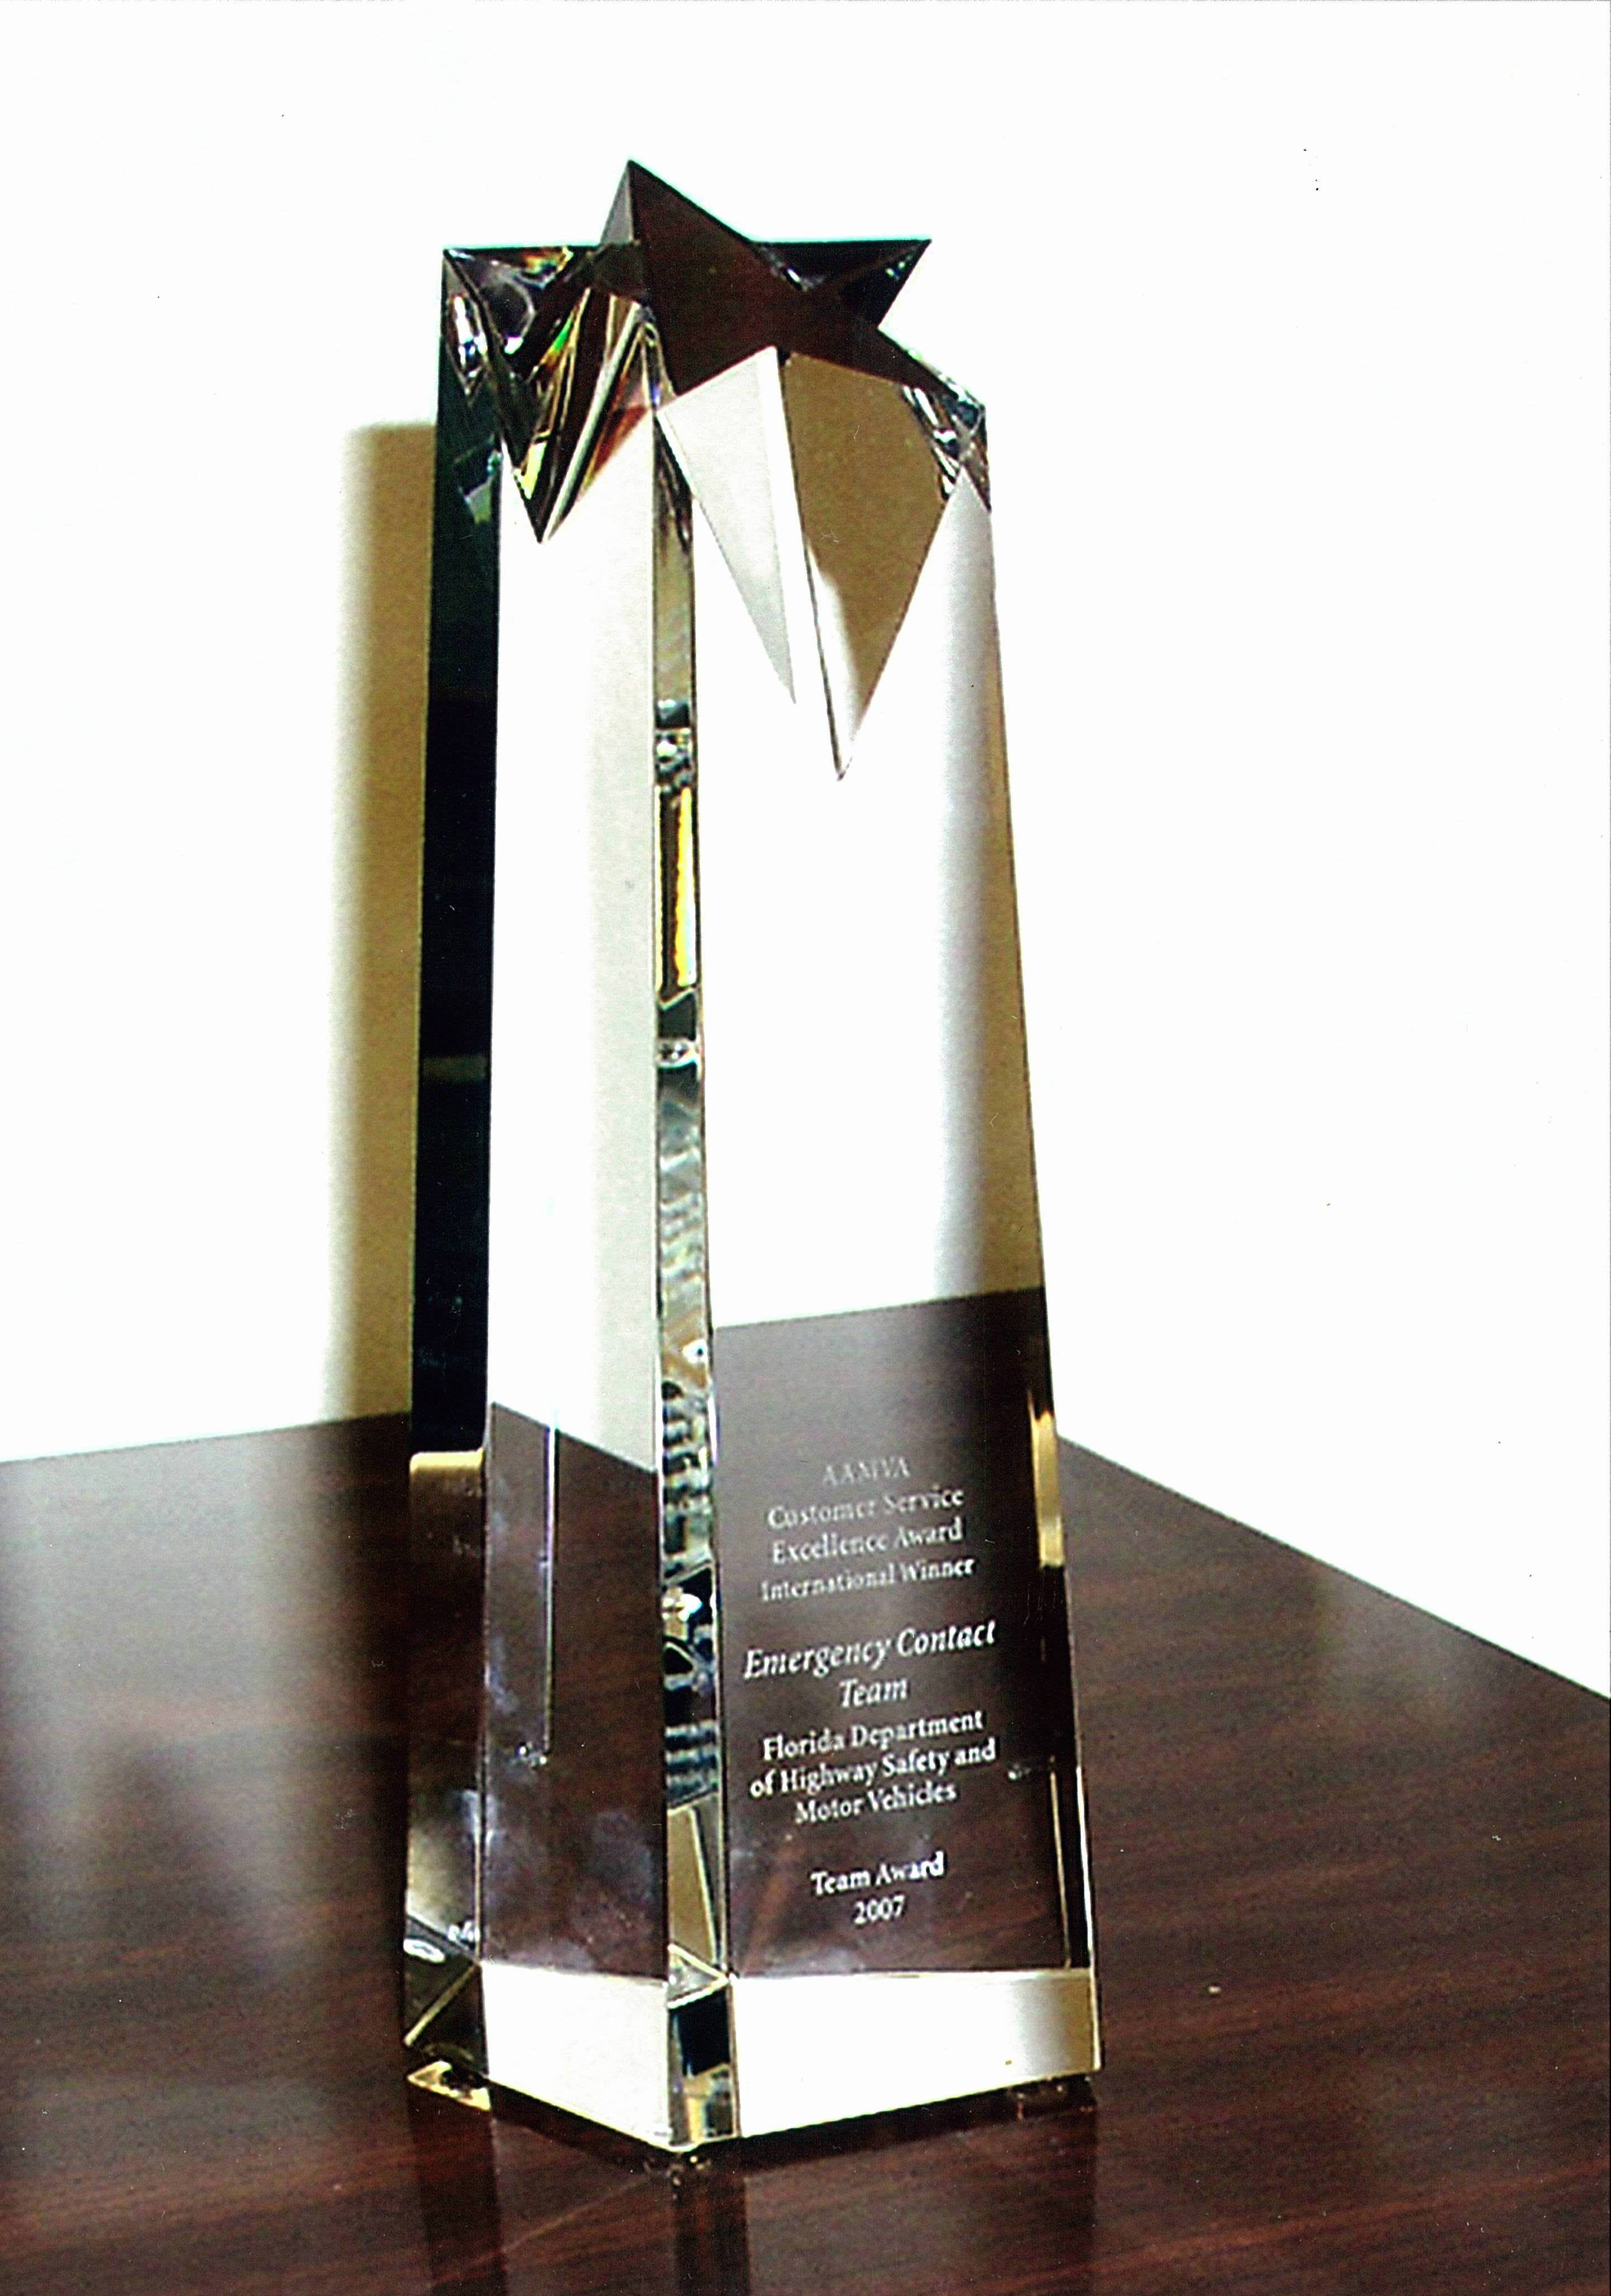 AAMVA Award won by Florida